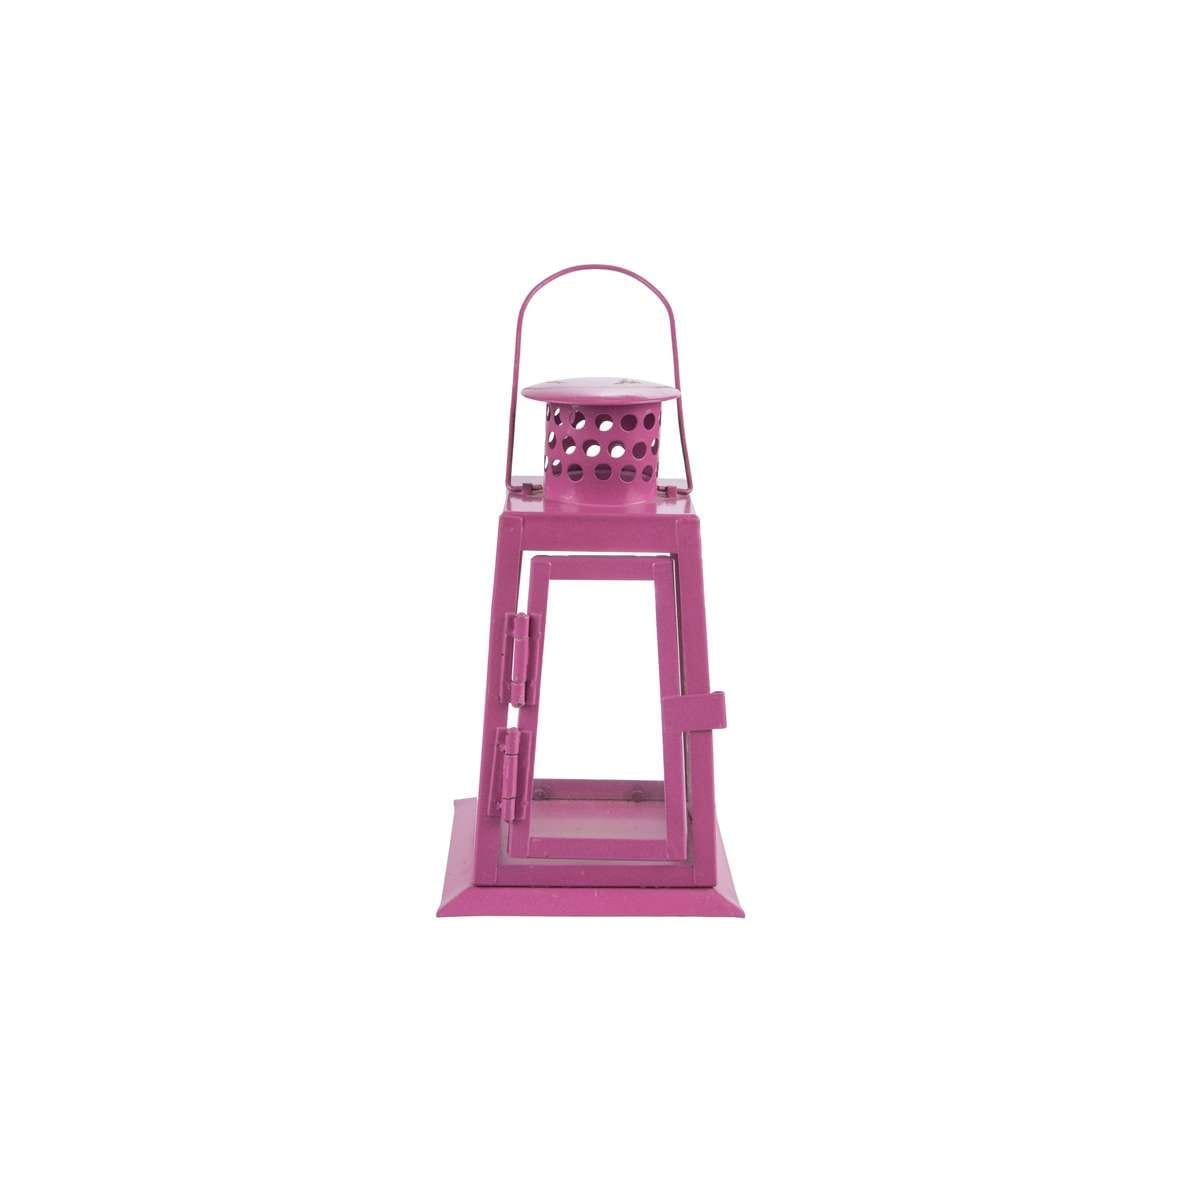 Φαναράκι Ρεσώ Μεταλλικό Ροζ-Μωβ Art Et Lumiere 9x9x15εκ. 09528 (Σετ 2 Τεμάχια) (Υλικό: Μεταλλικό, Χρώμα: Ροζ) - Art Et Lumiere - lumiere_09528